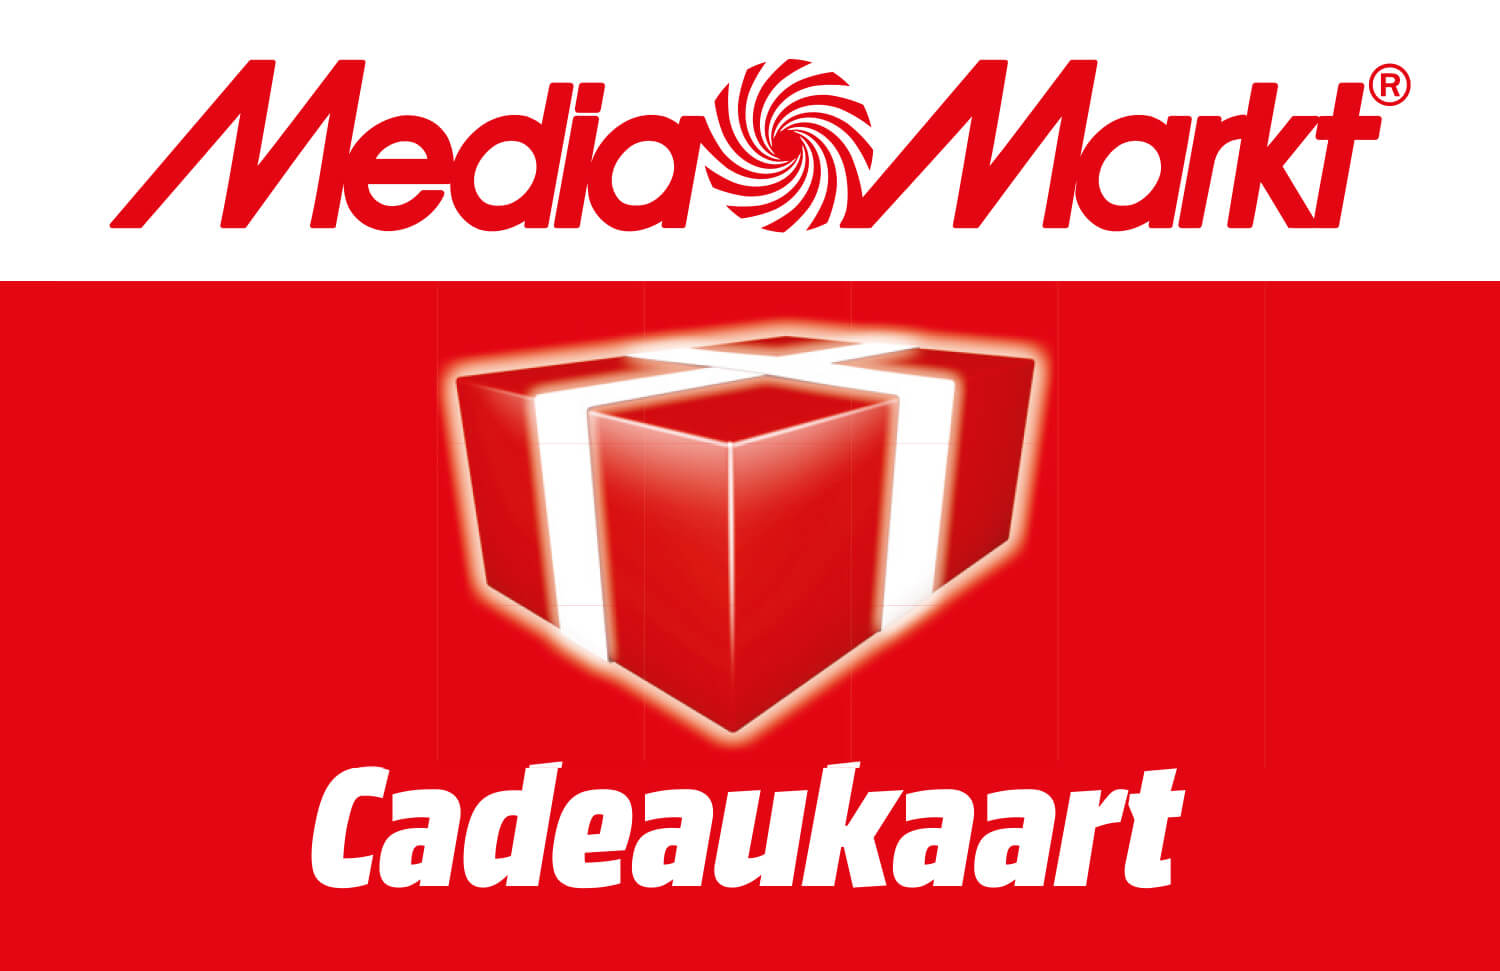 MediaMarkt Cadeaukaart |